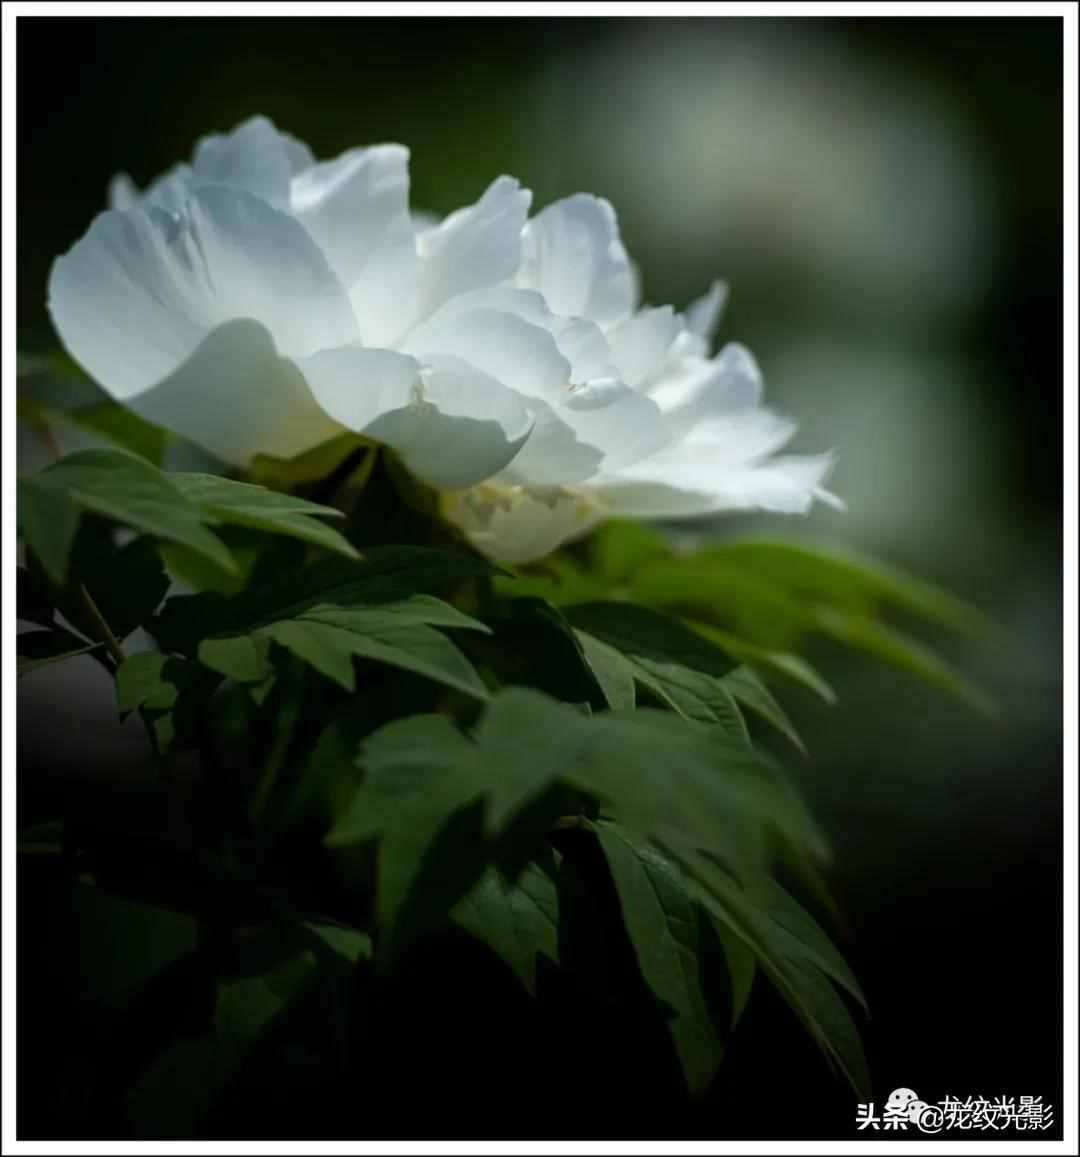 有一个成语叫“国色天香”，专属于一种花：千年古都的牡丹